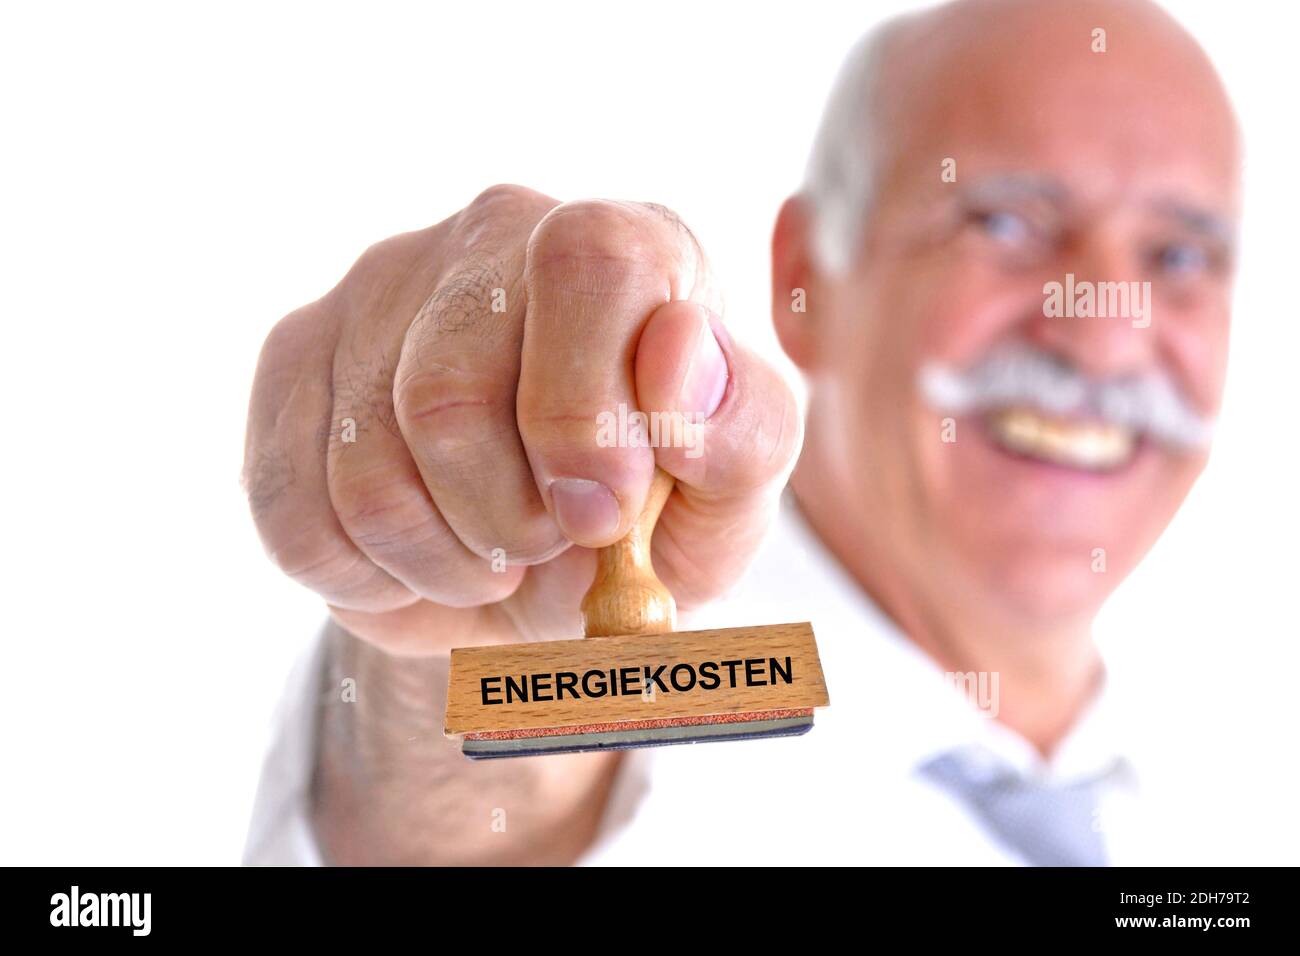 65, 70, Jahre, Mann hält Stempel in der Hand, Aufschrift: Energiekosten, Stock Photo